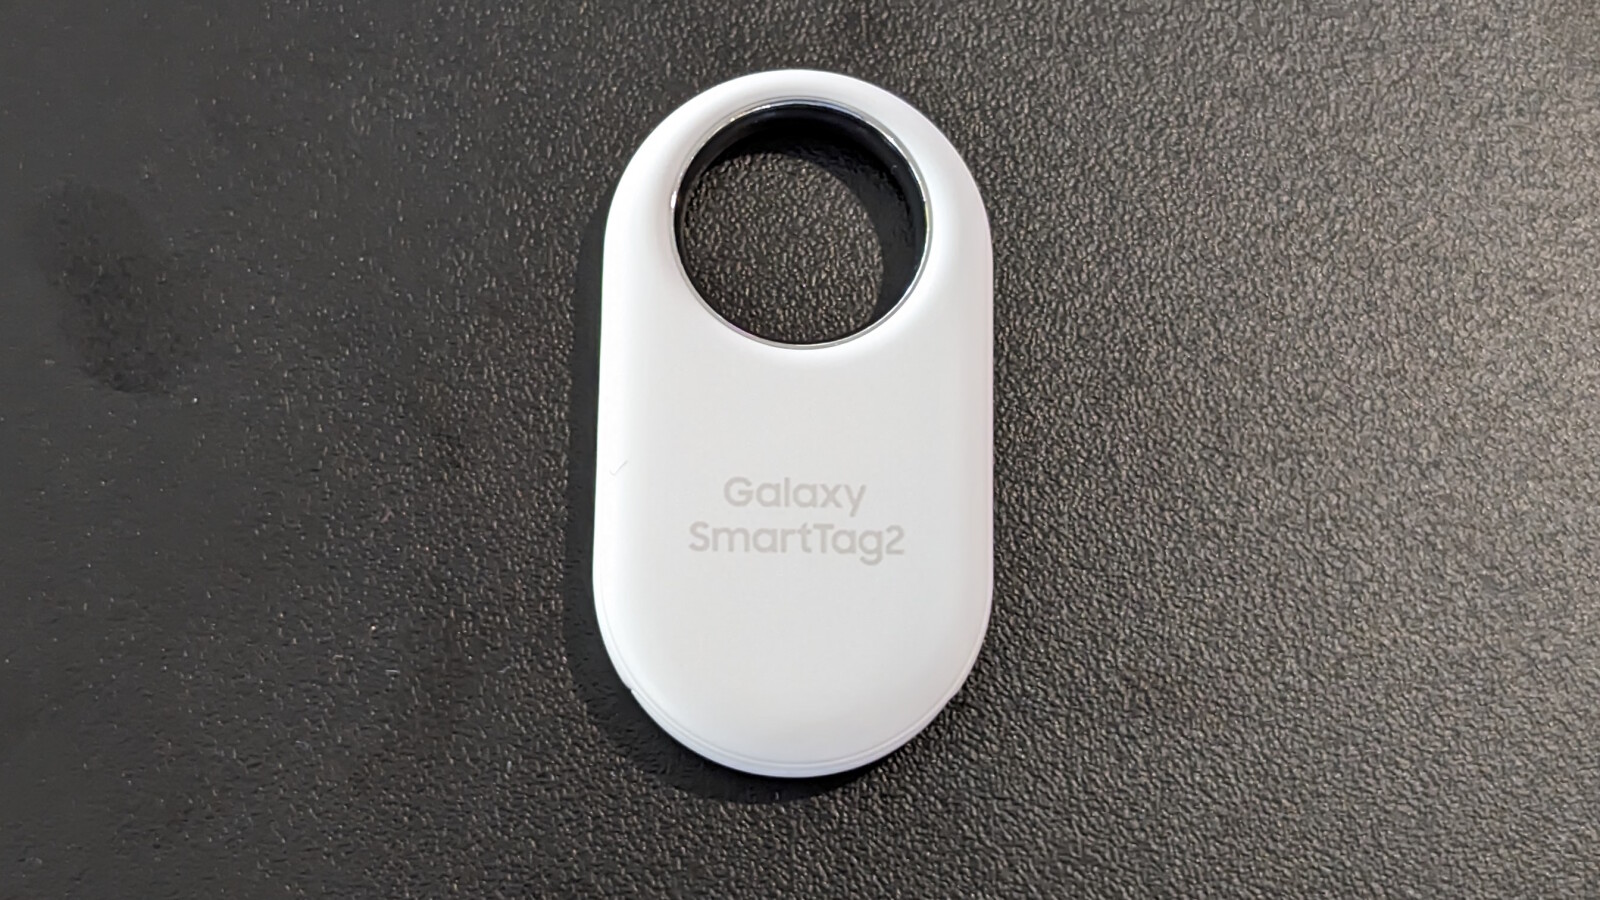 Lancement du Samsung Galaxy SmartTag2 : Un Dispositif de